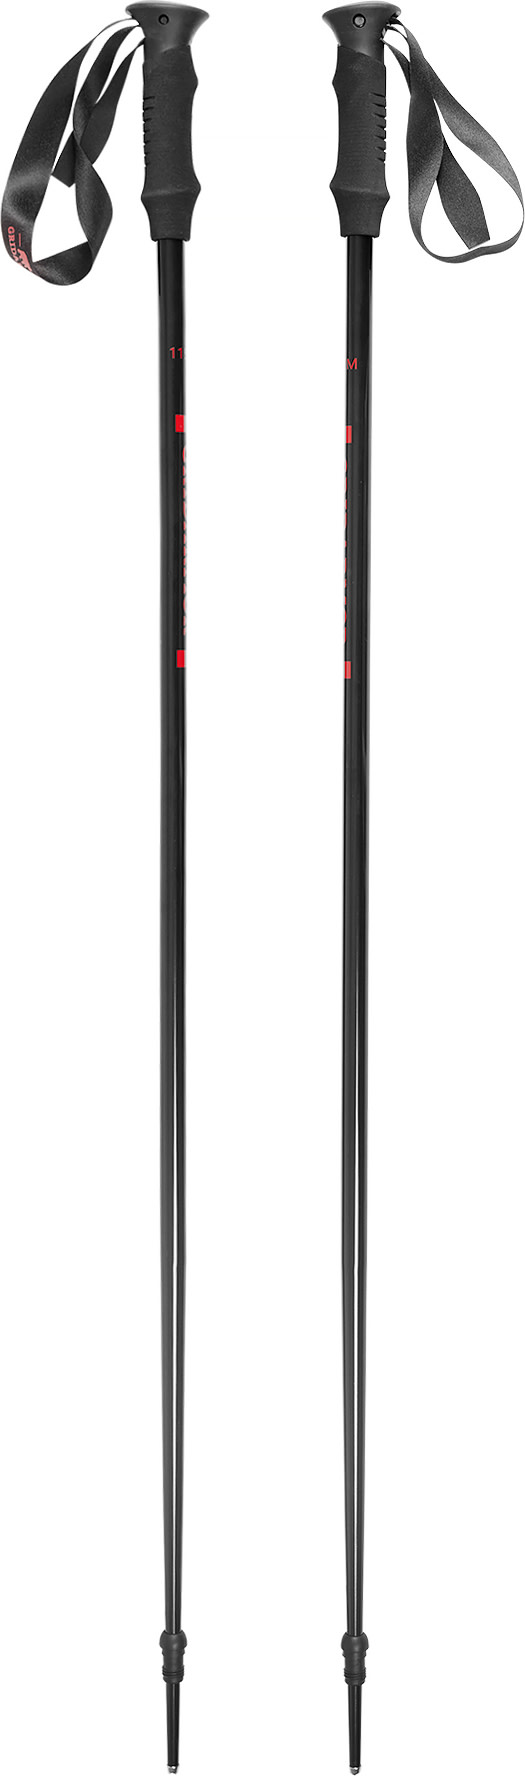 Gridarmor Hafjell Ski Pole Black/Ribbon Red